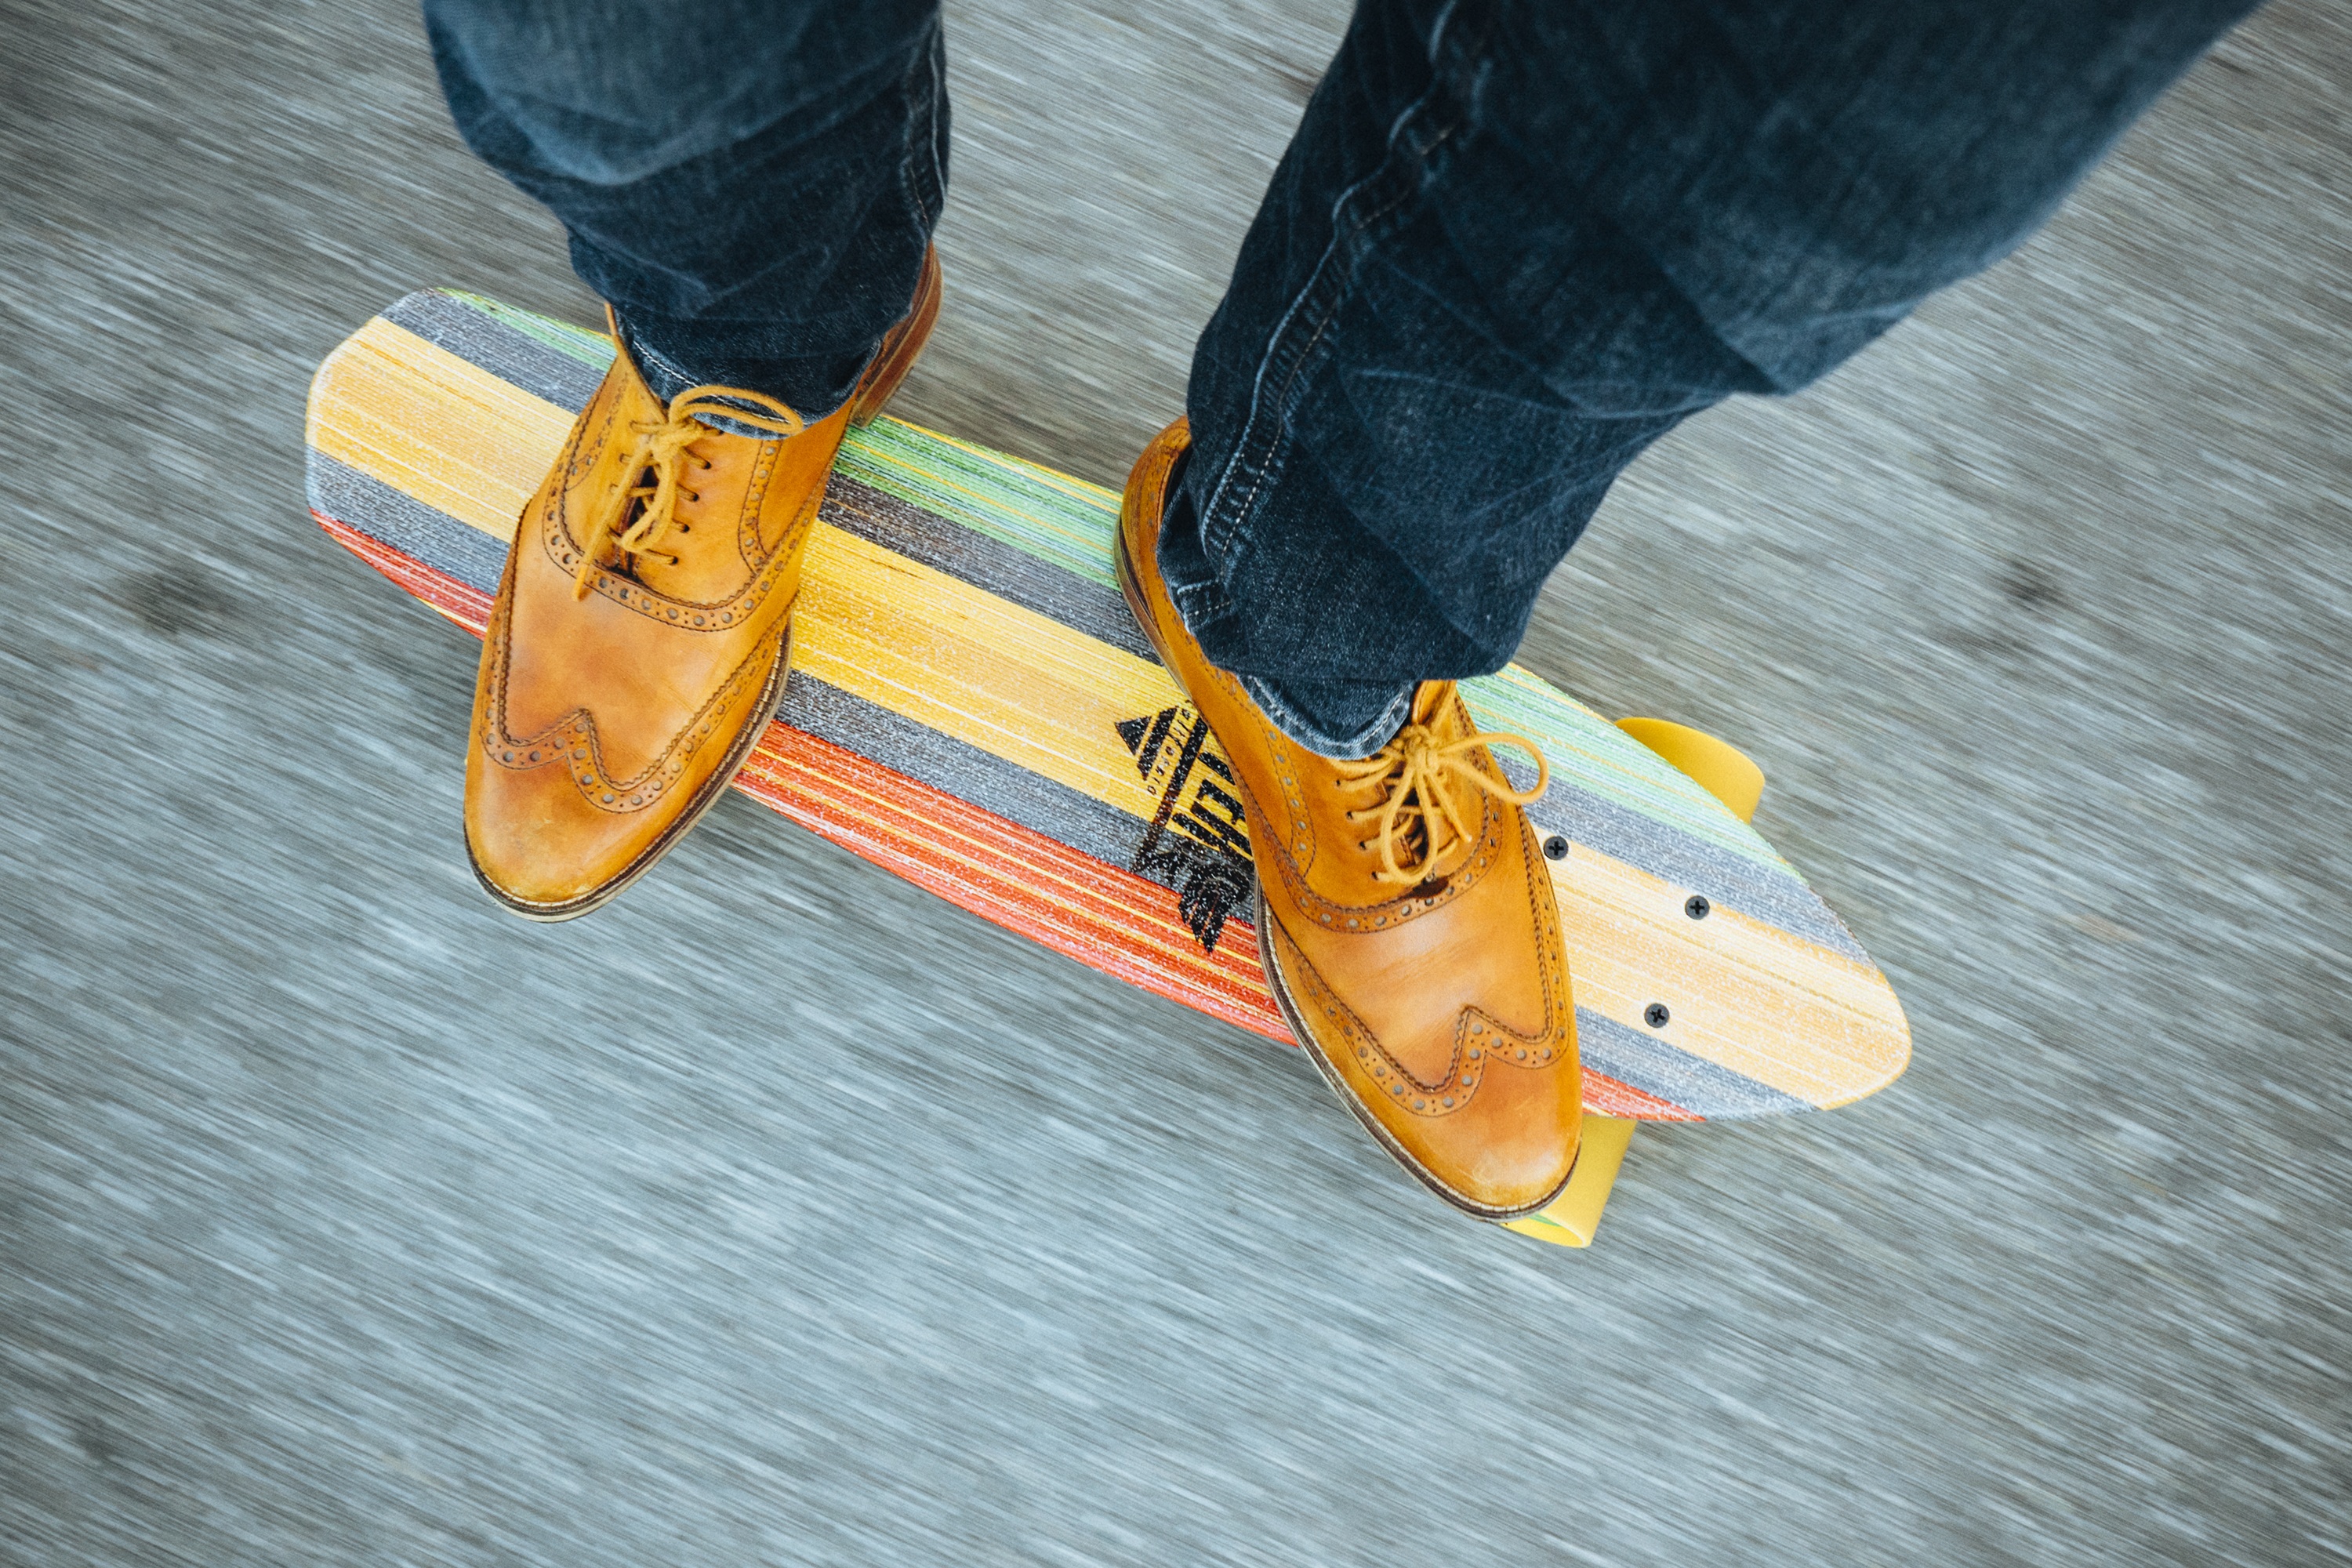 sports, skateboarding, jeans, shoe, skateboard